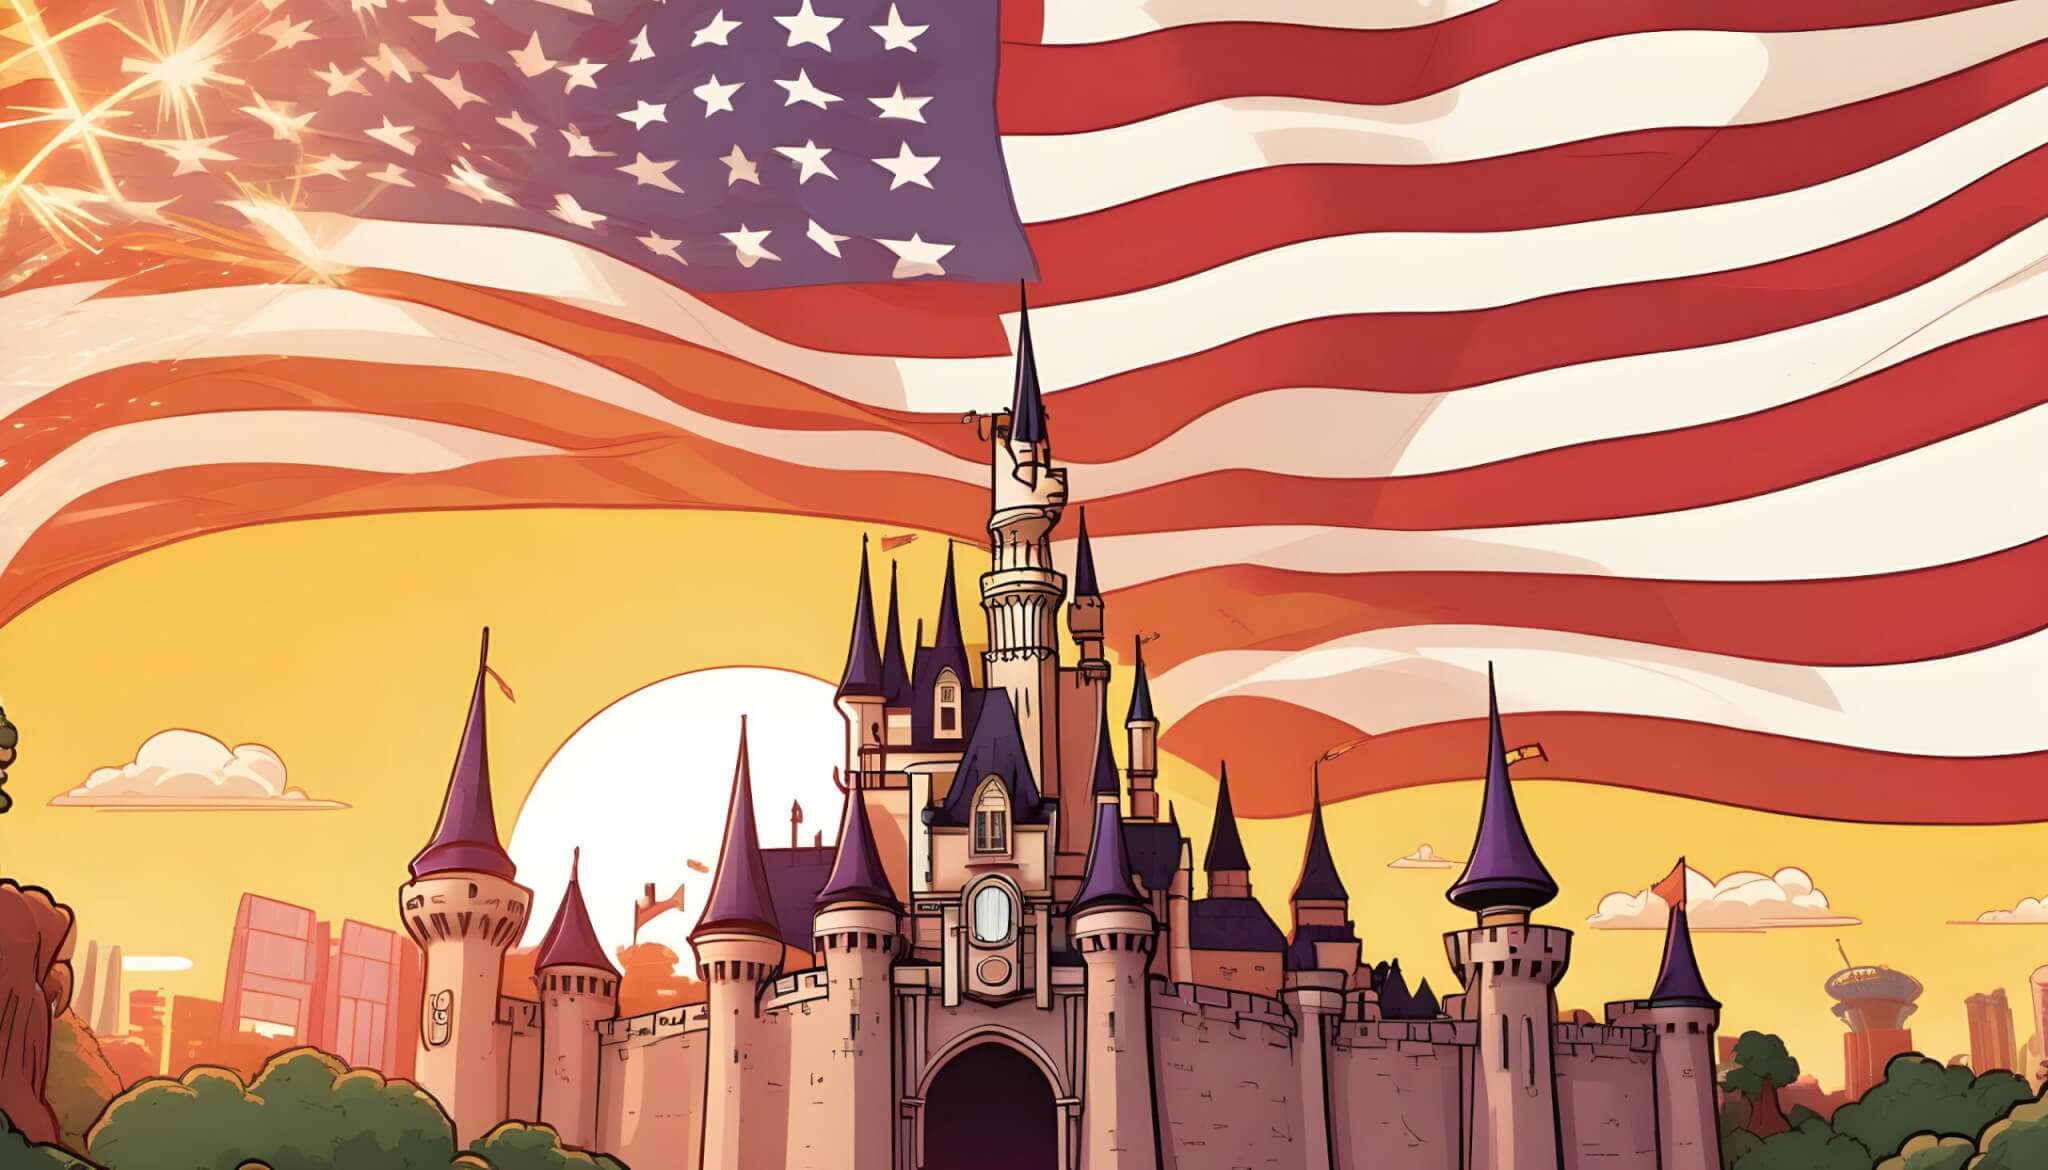 ilustracion del castillo de disney con la bandera estadounidense por detras